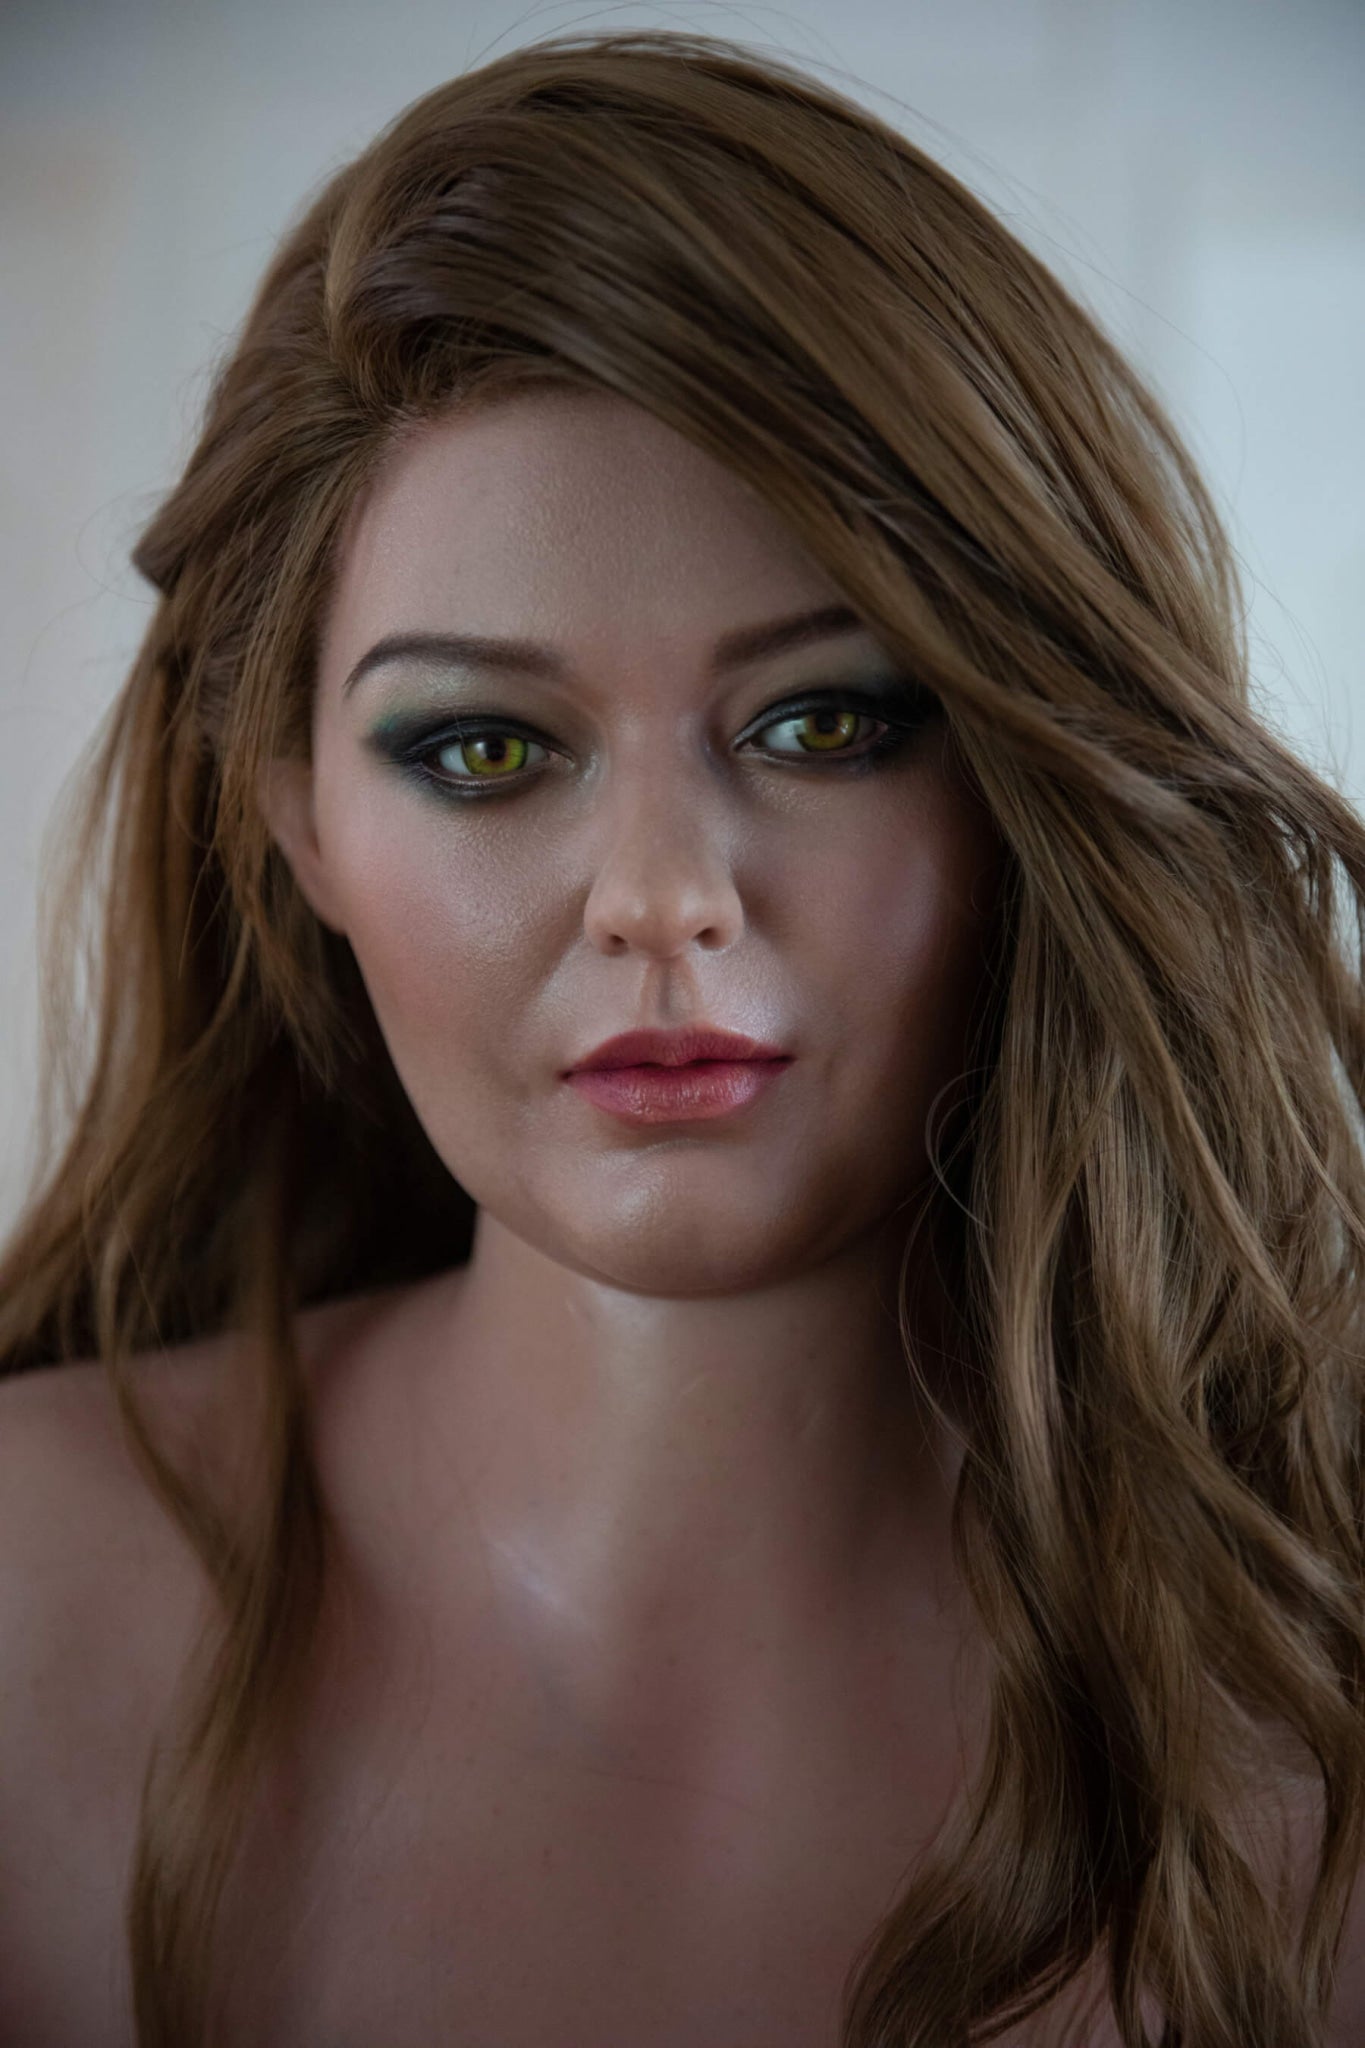 Ursula BBW Realistic Sex Doll - Starpery® Starpery®